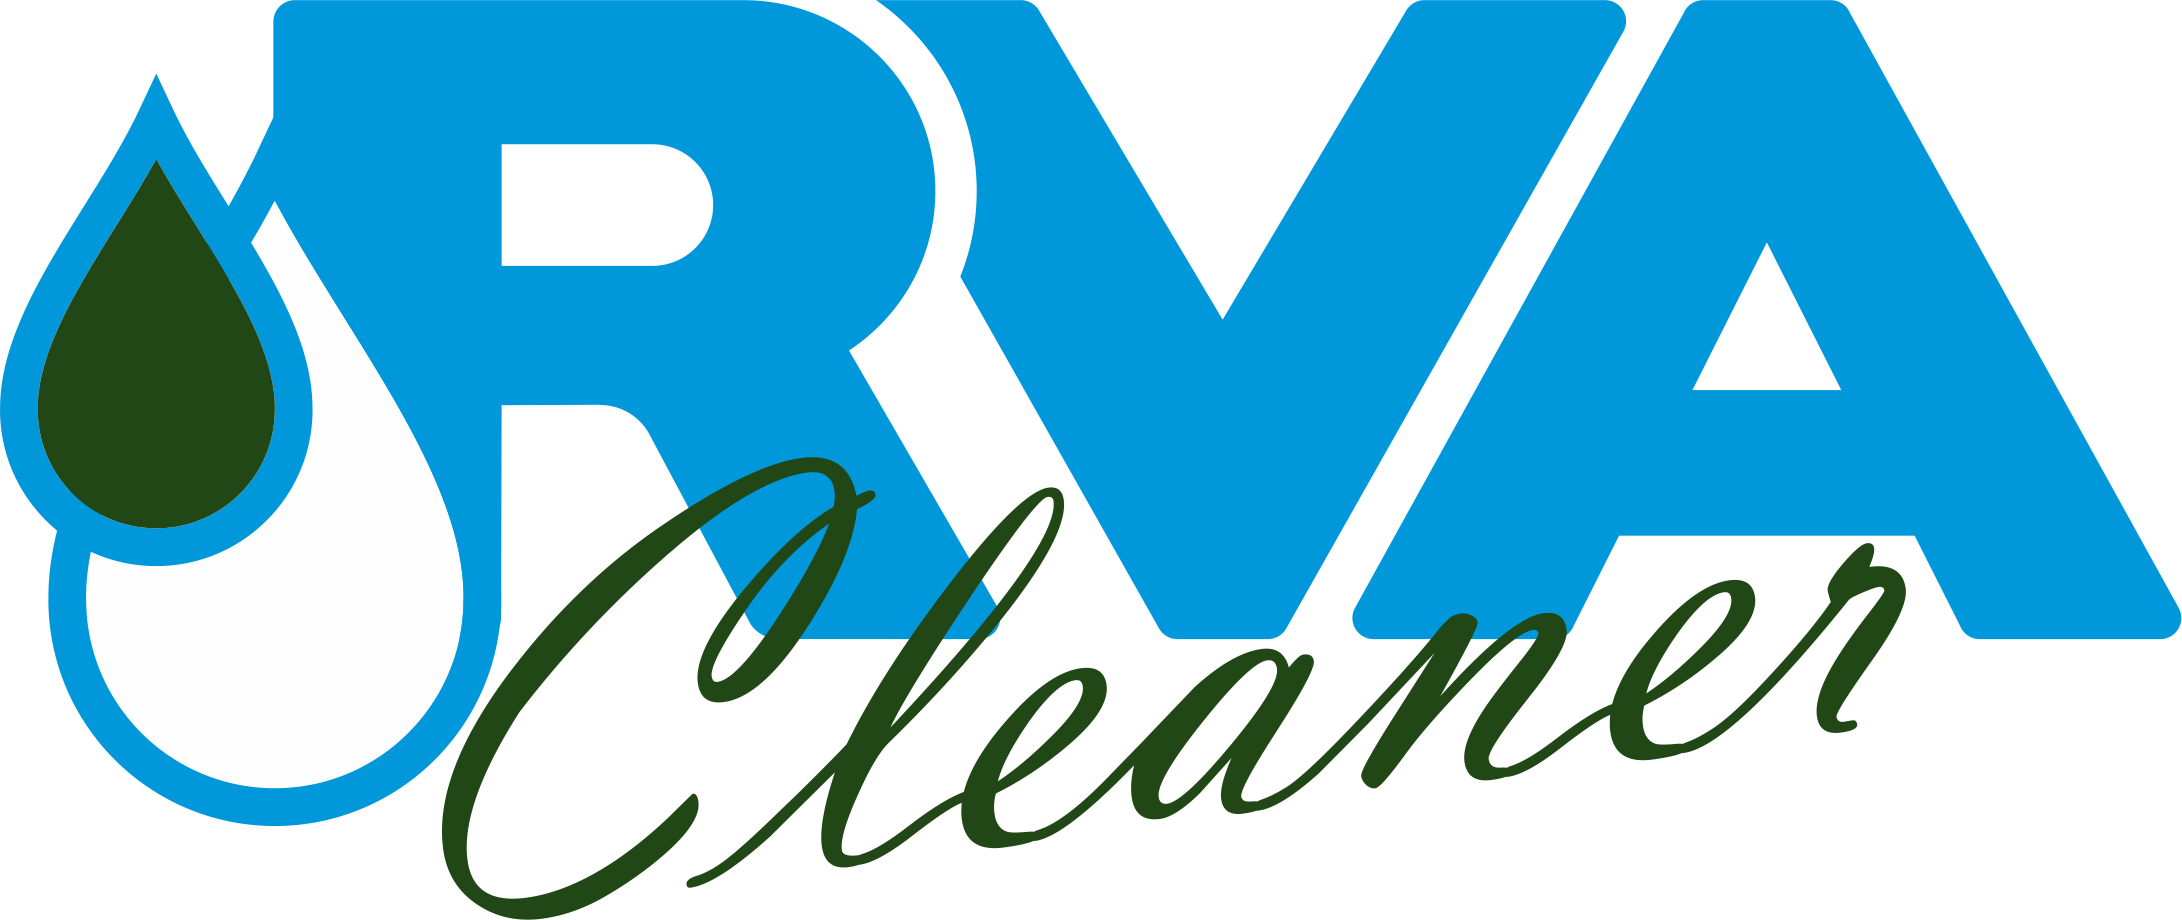 RVA Cleaner Logo